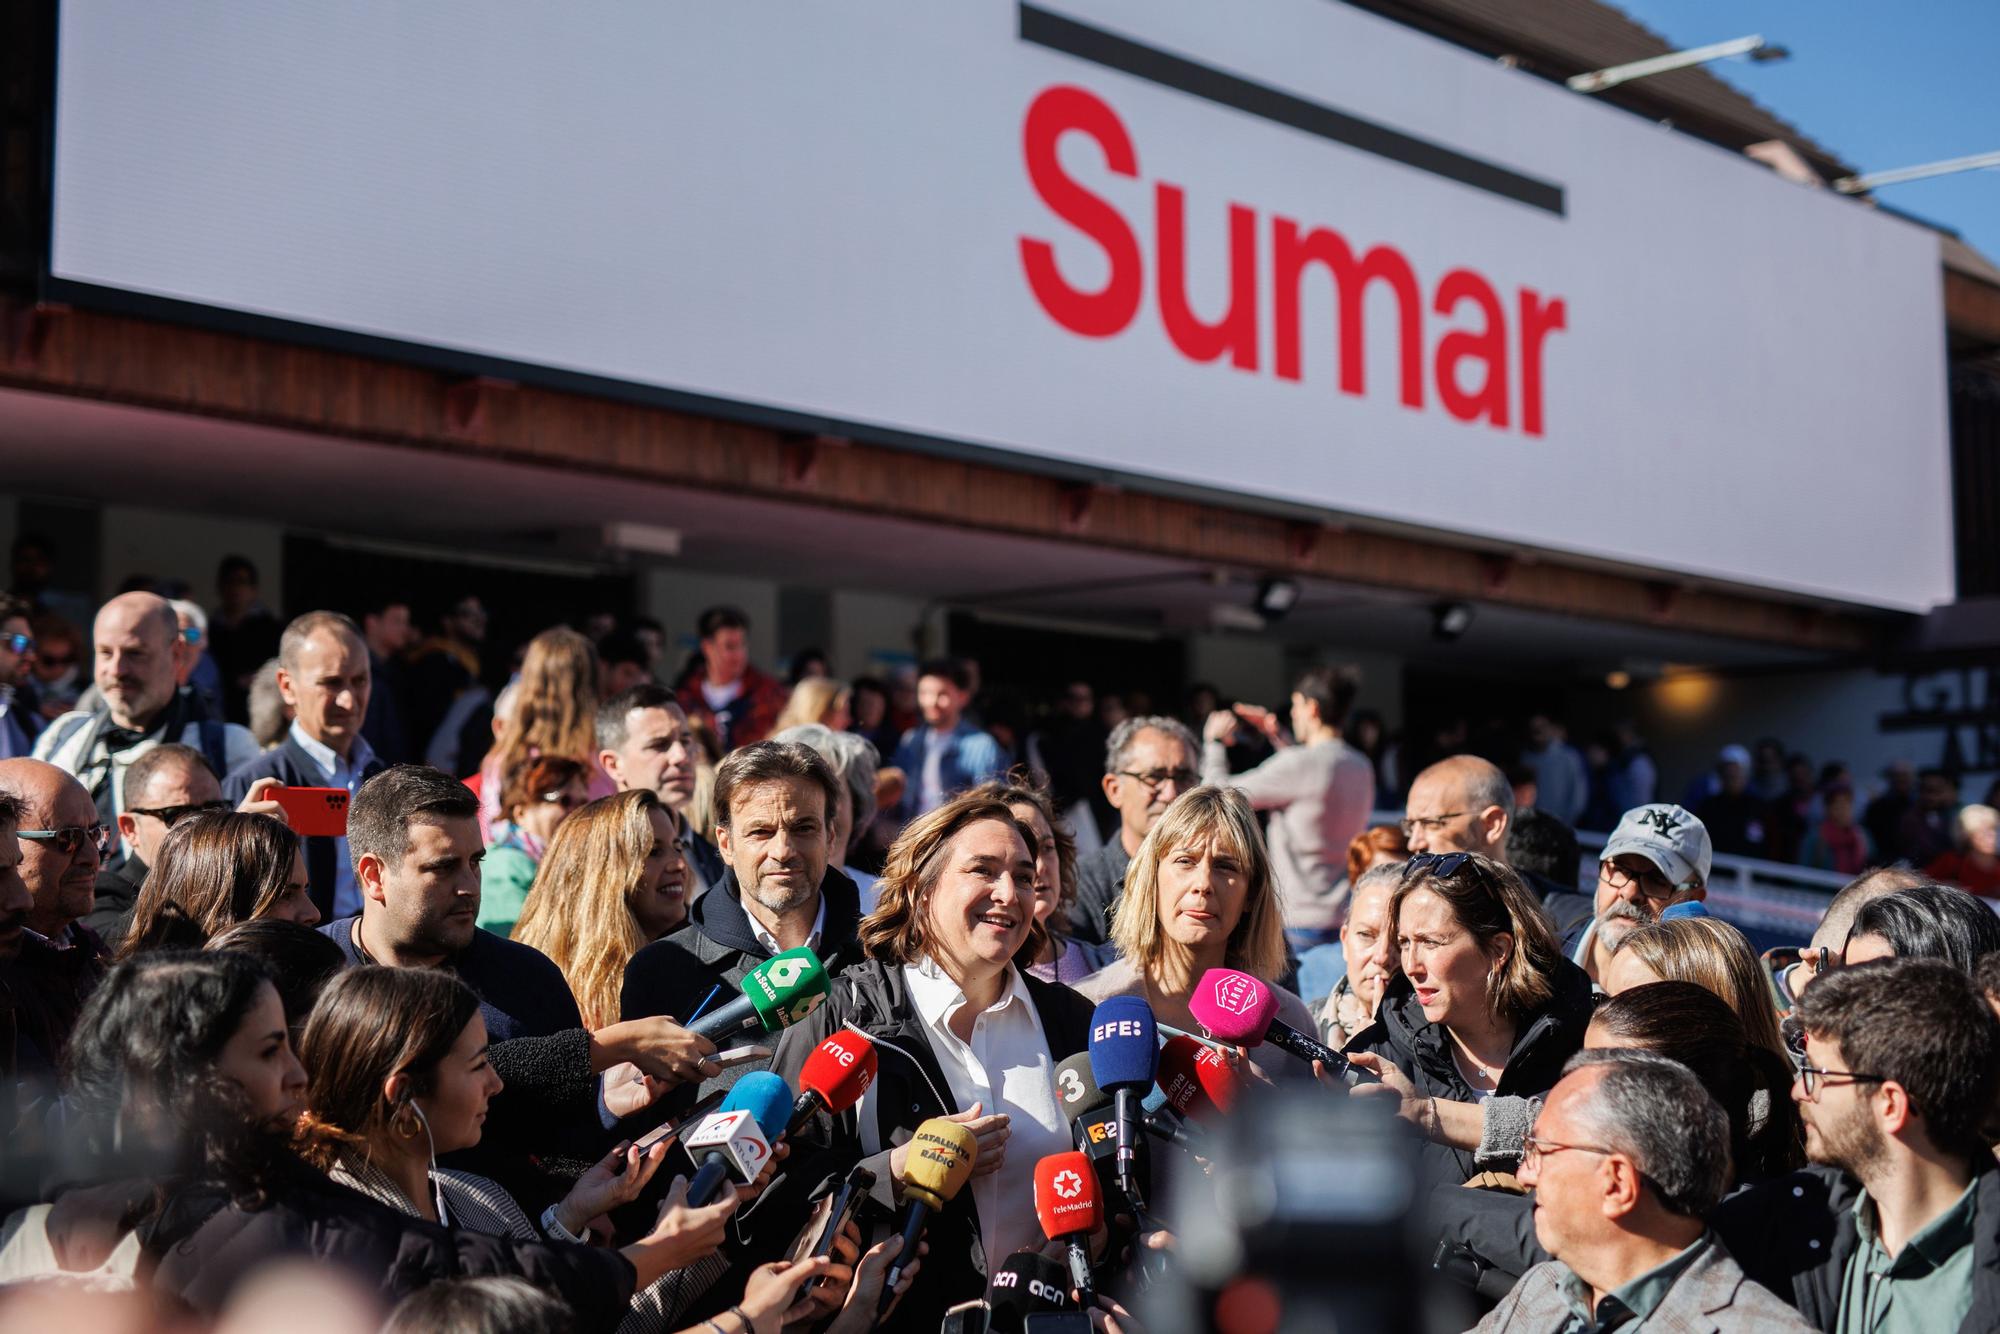 L'alcaldessa de Barcelona, Ada Colau, atén els mitjans a la seva arribada a l'acte de la plataforma Sumar al poliesportiu Antonio Magariños, a Madrid